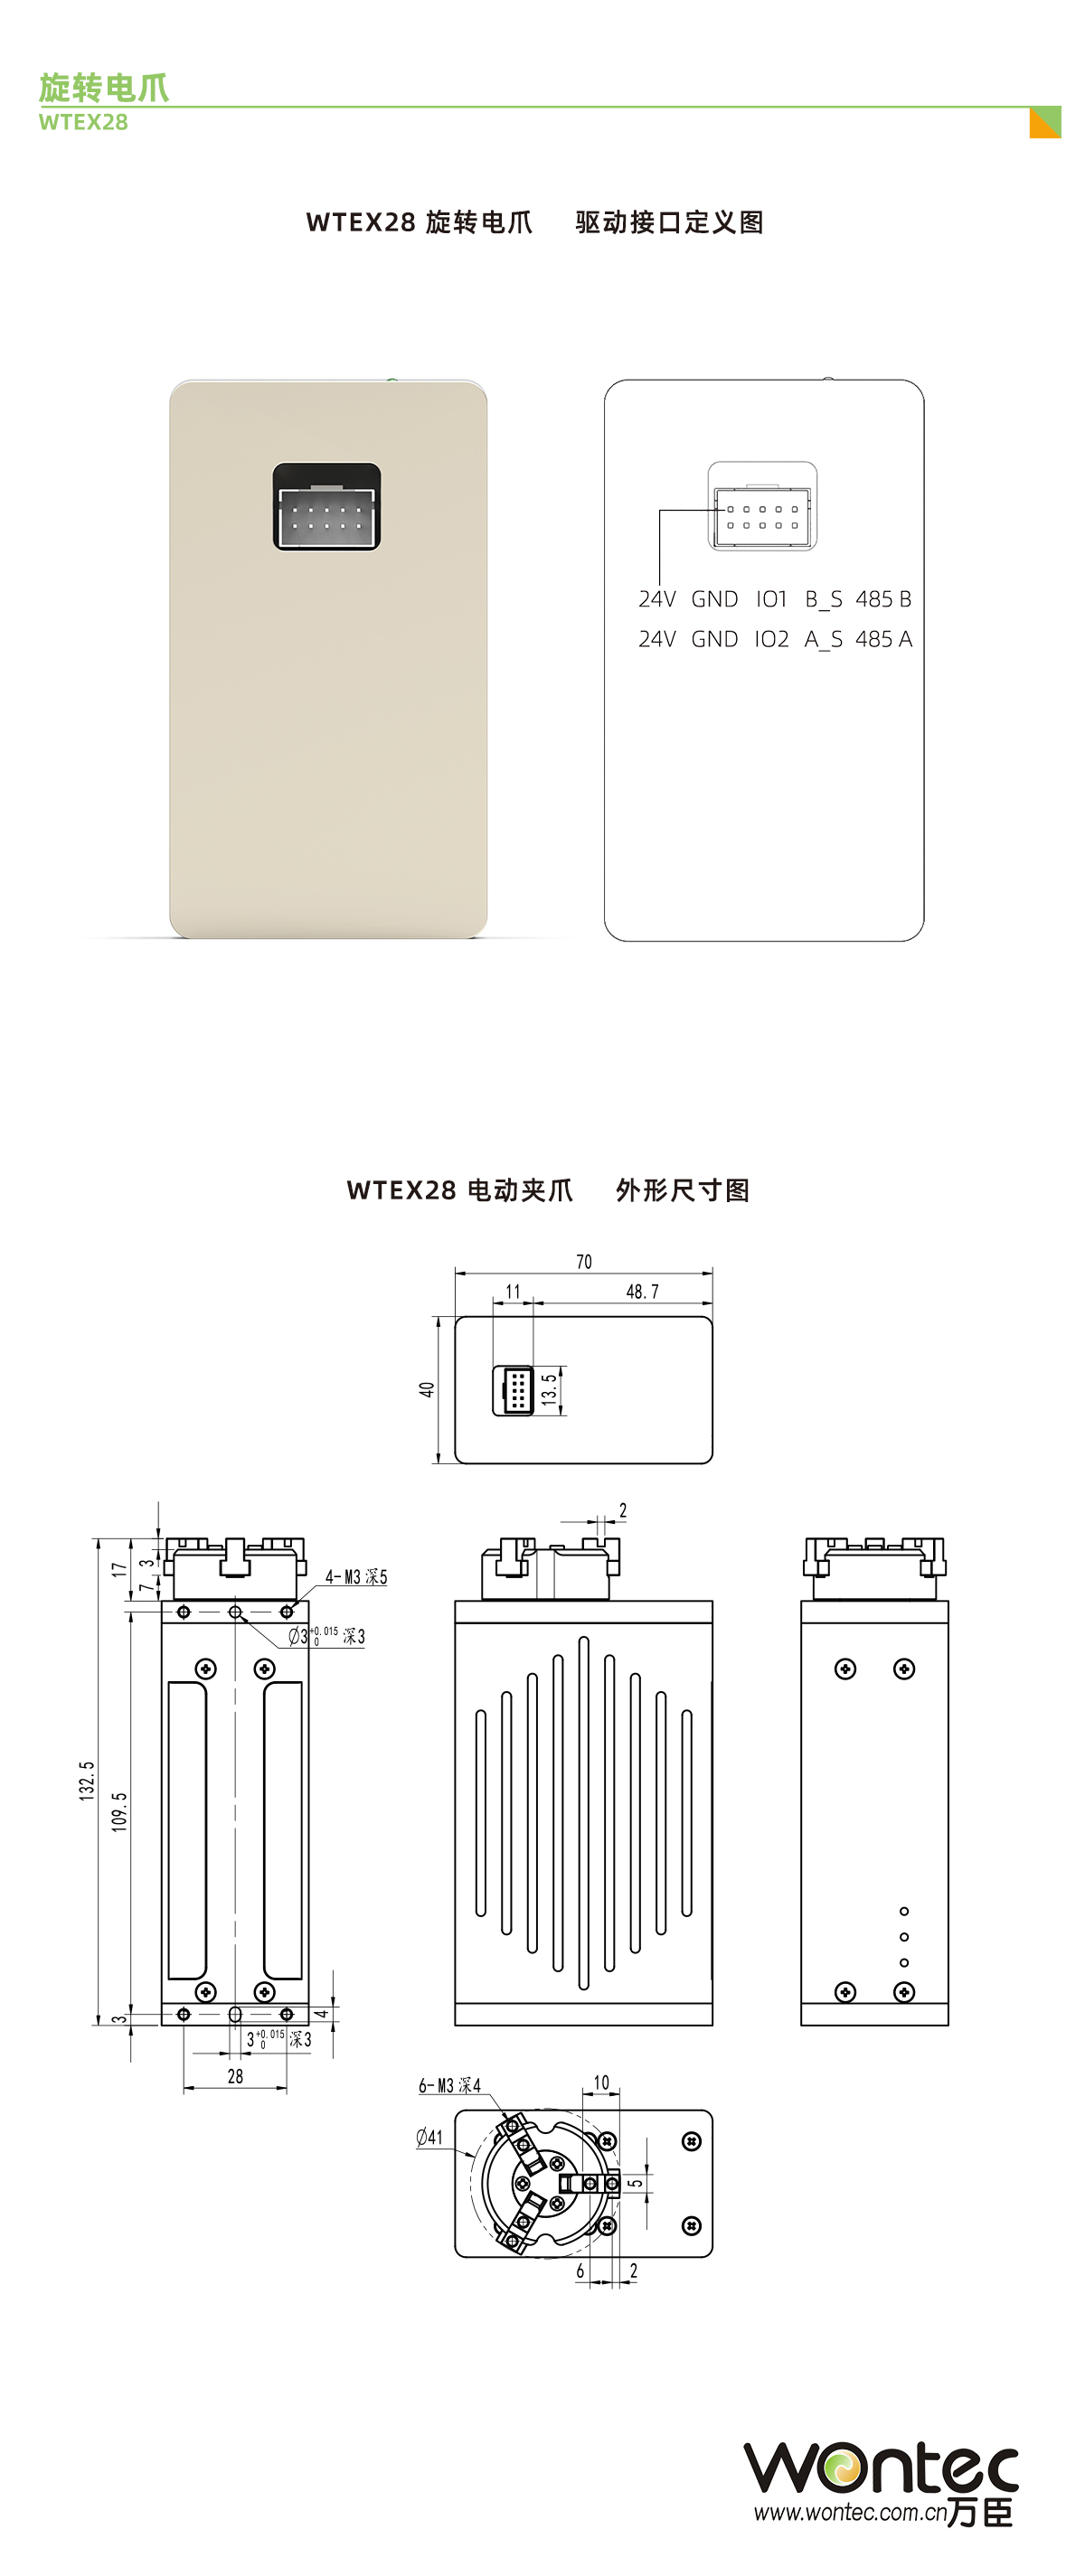 WTEX28 接口定义和尺寸图.jpg